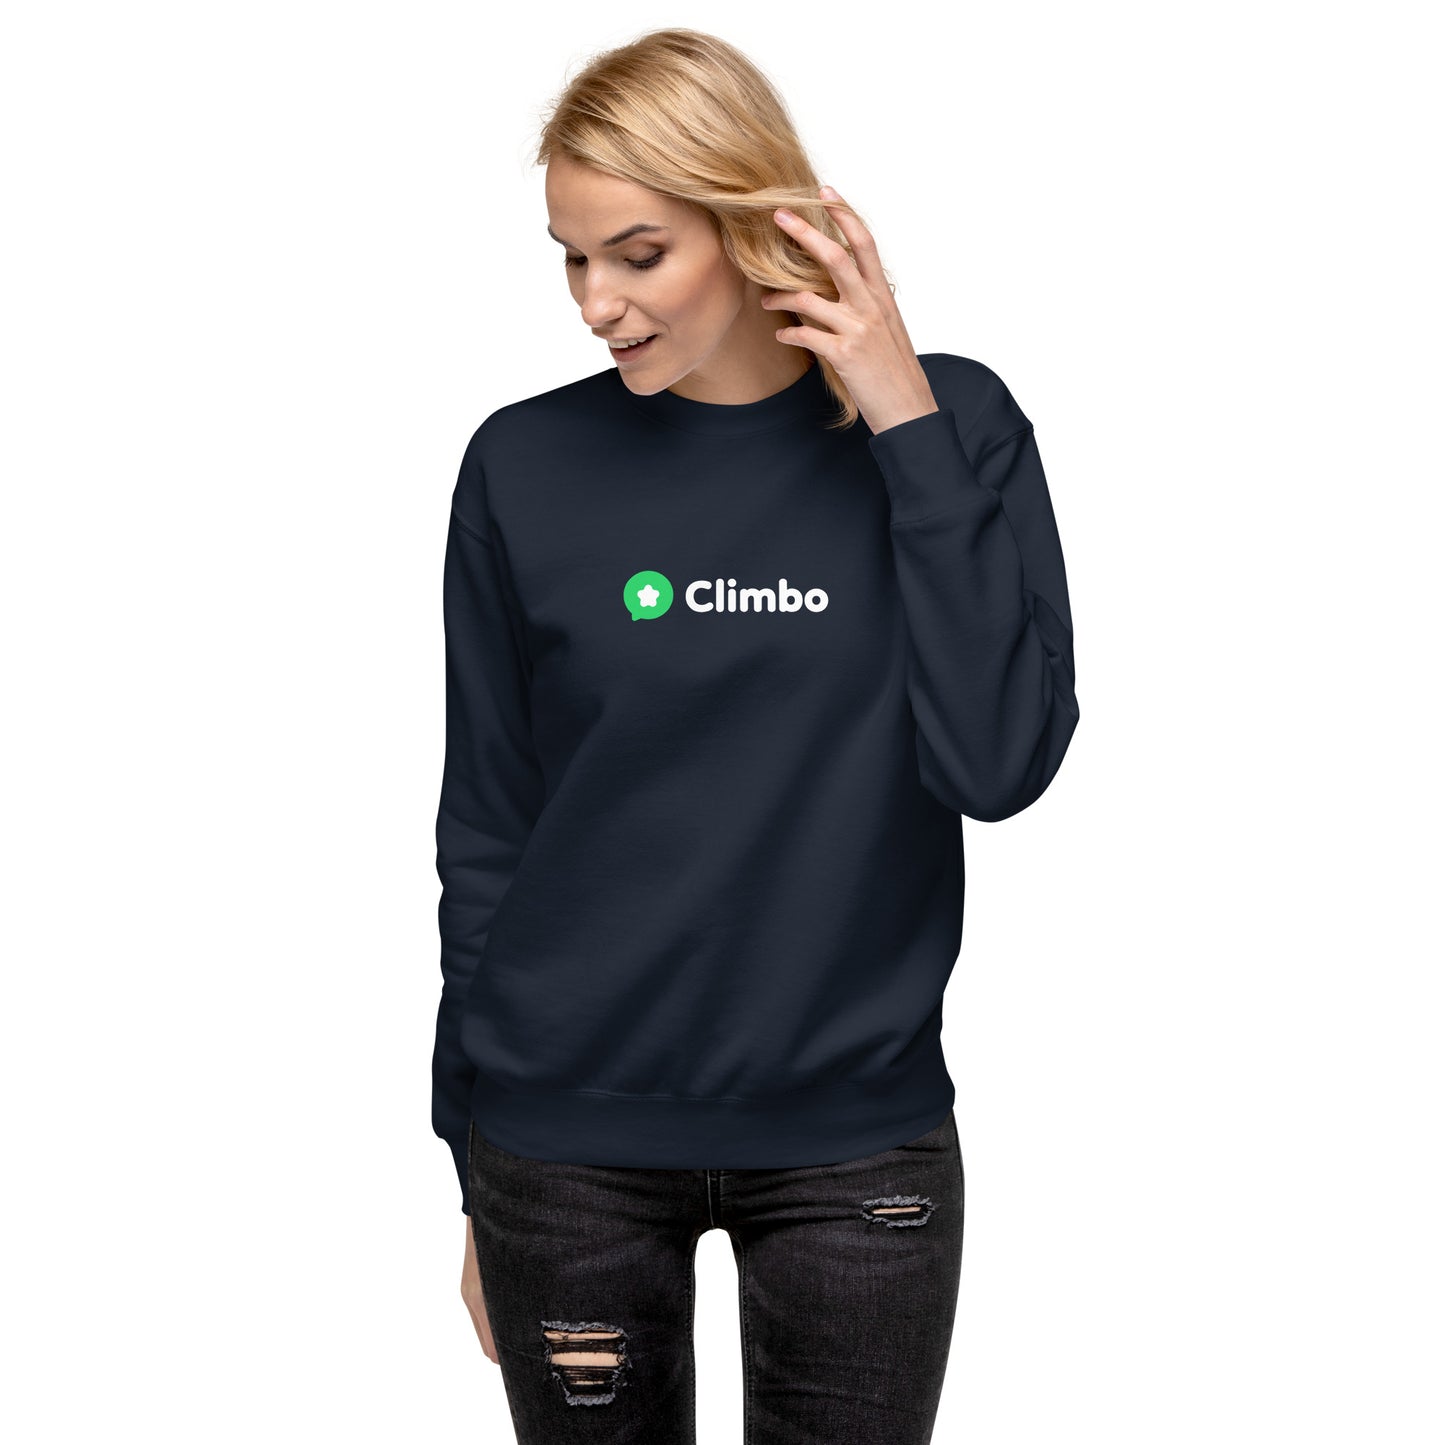 Climbo Sweat - Unisex Premium Sweatshirt